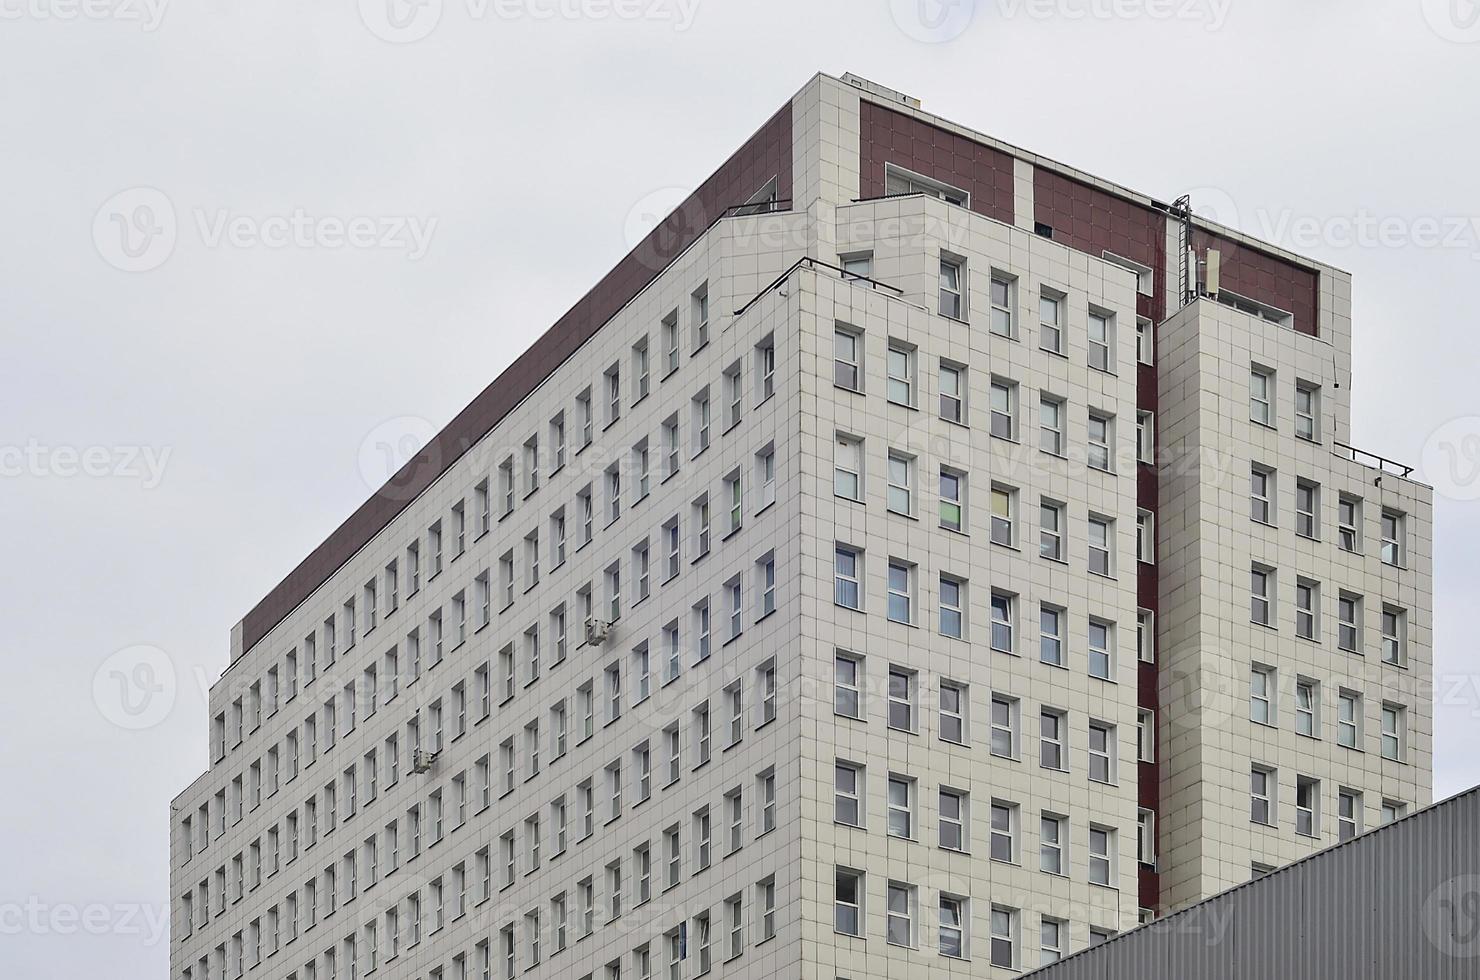 edificio de oficinas de varios pisos con cielo azul foto